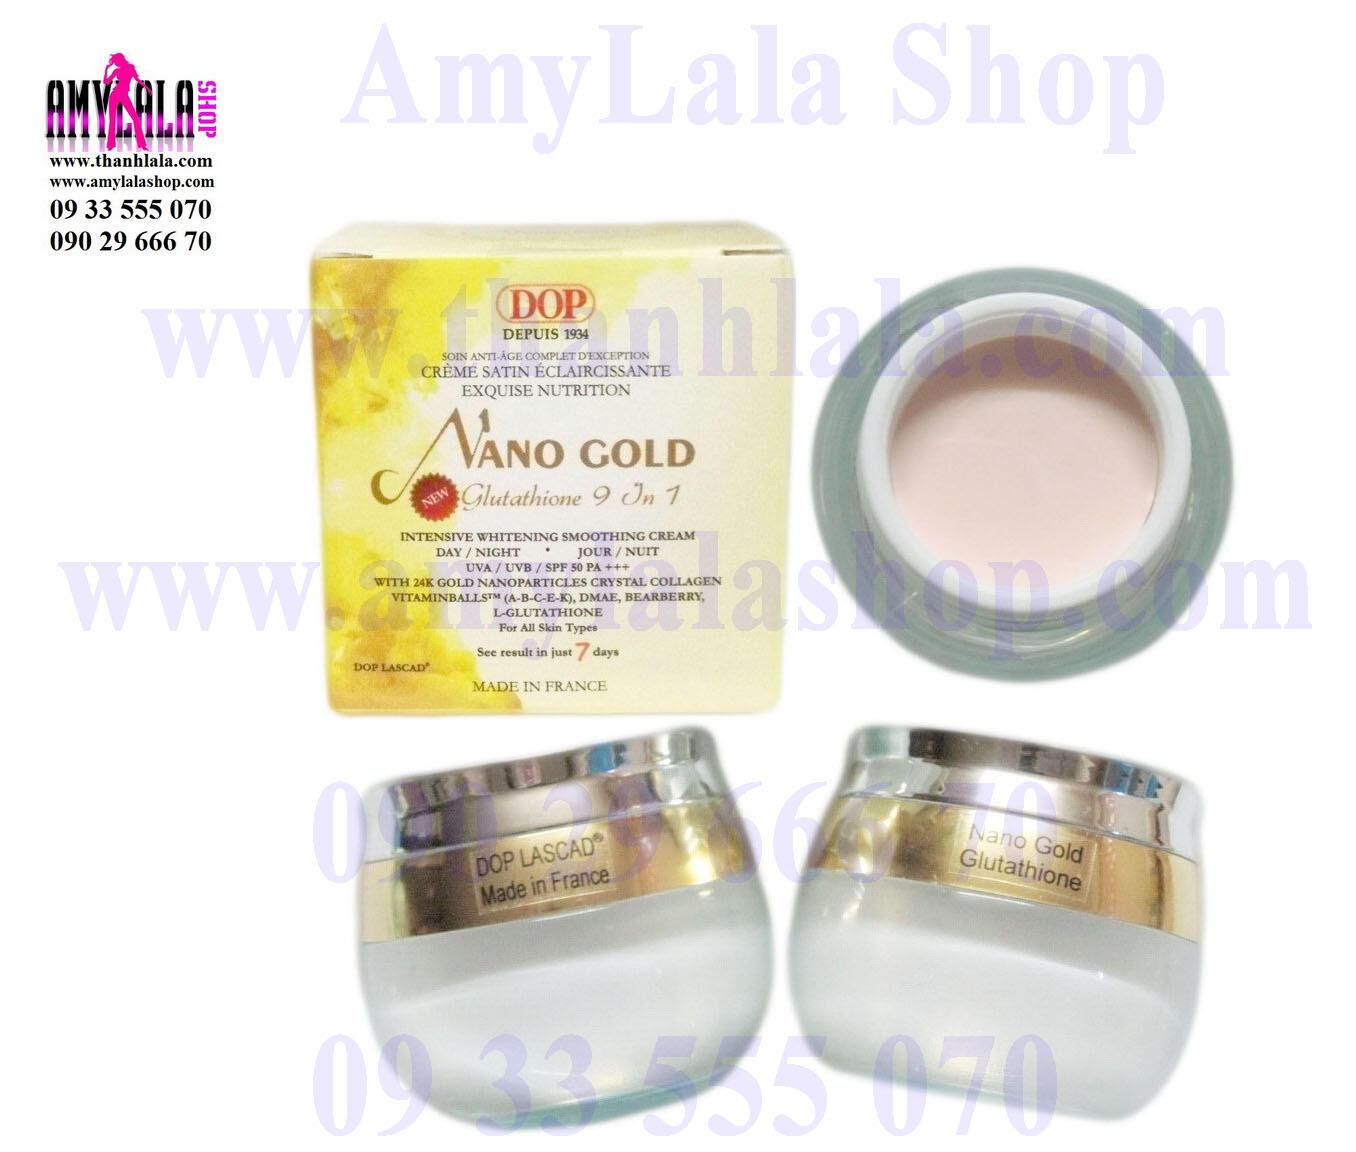 Kem mặt (120g) hạt vàng 24k Dop Lascad® Nano Gold Glutathione 9in1 siêu trắng cao cấp - 0933555070 -